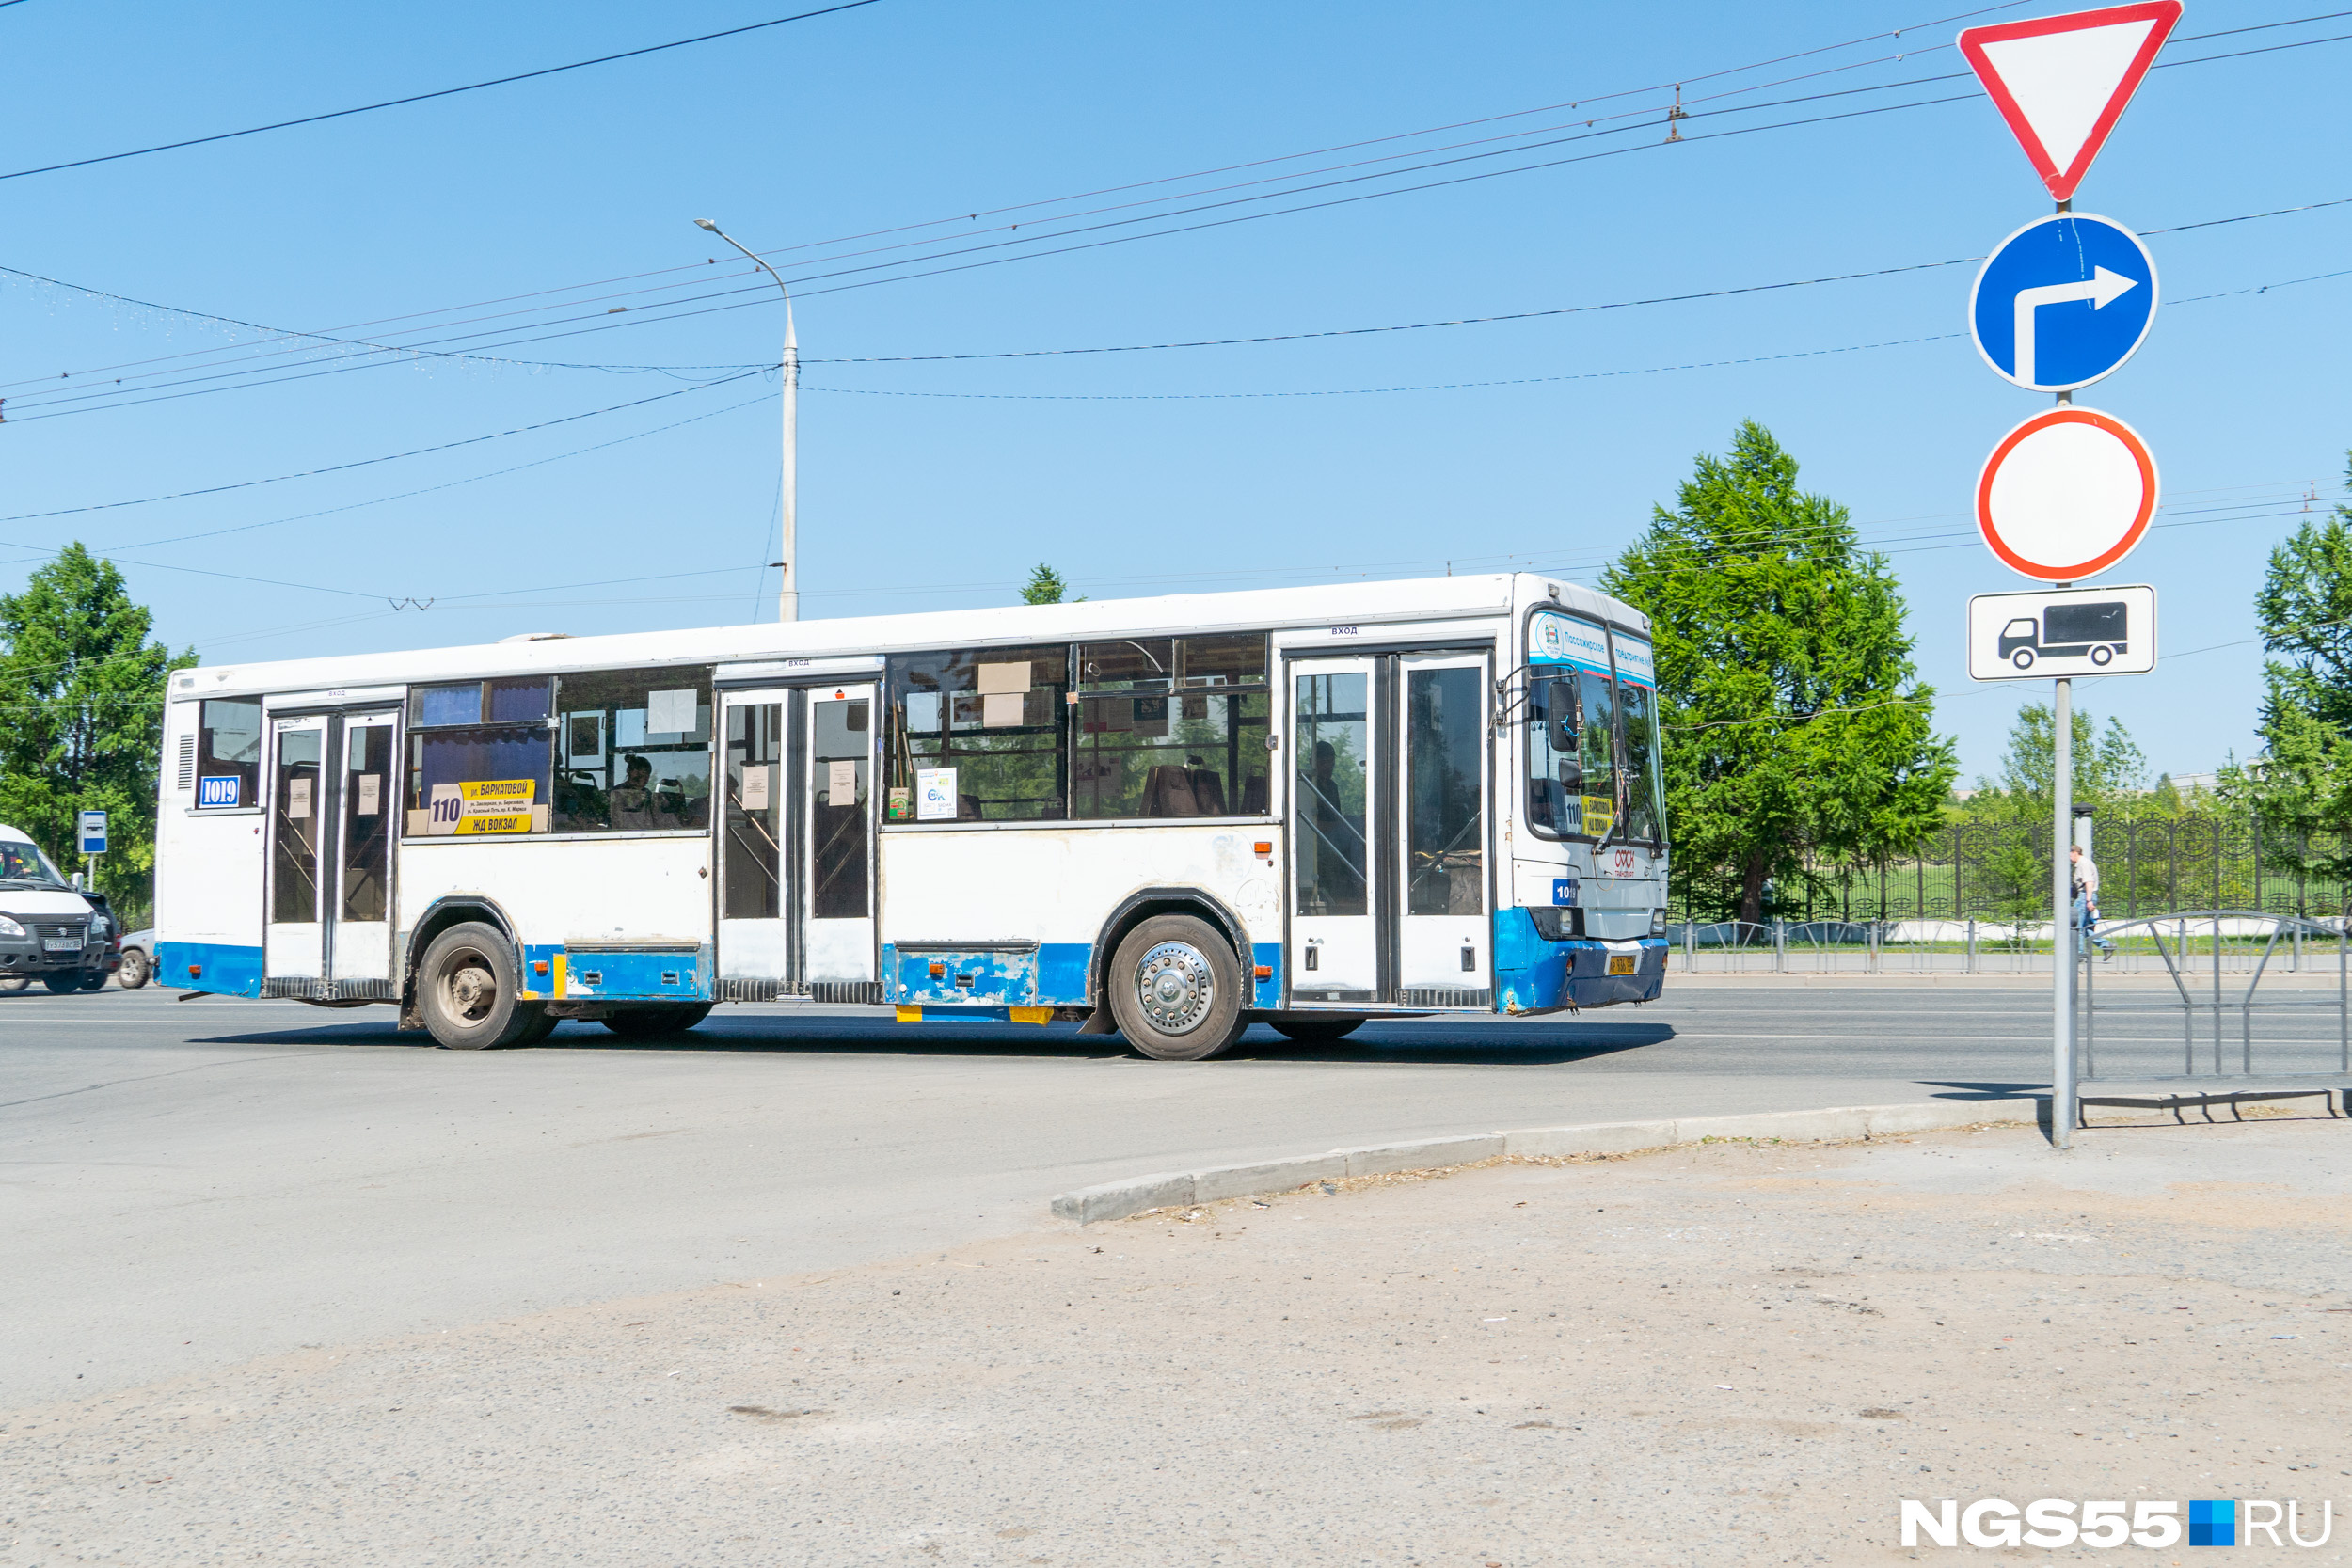 Старым автобусам надо опасаться — новые автобусы от программы «Чистый воздух» уже на подходе